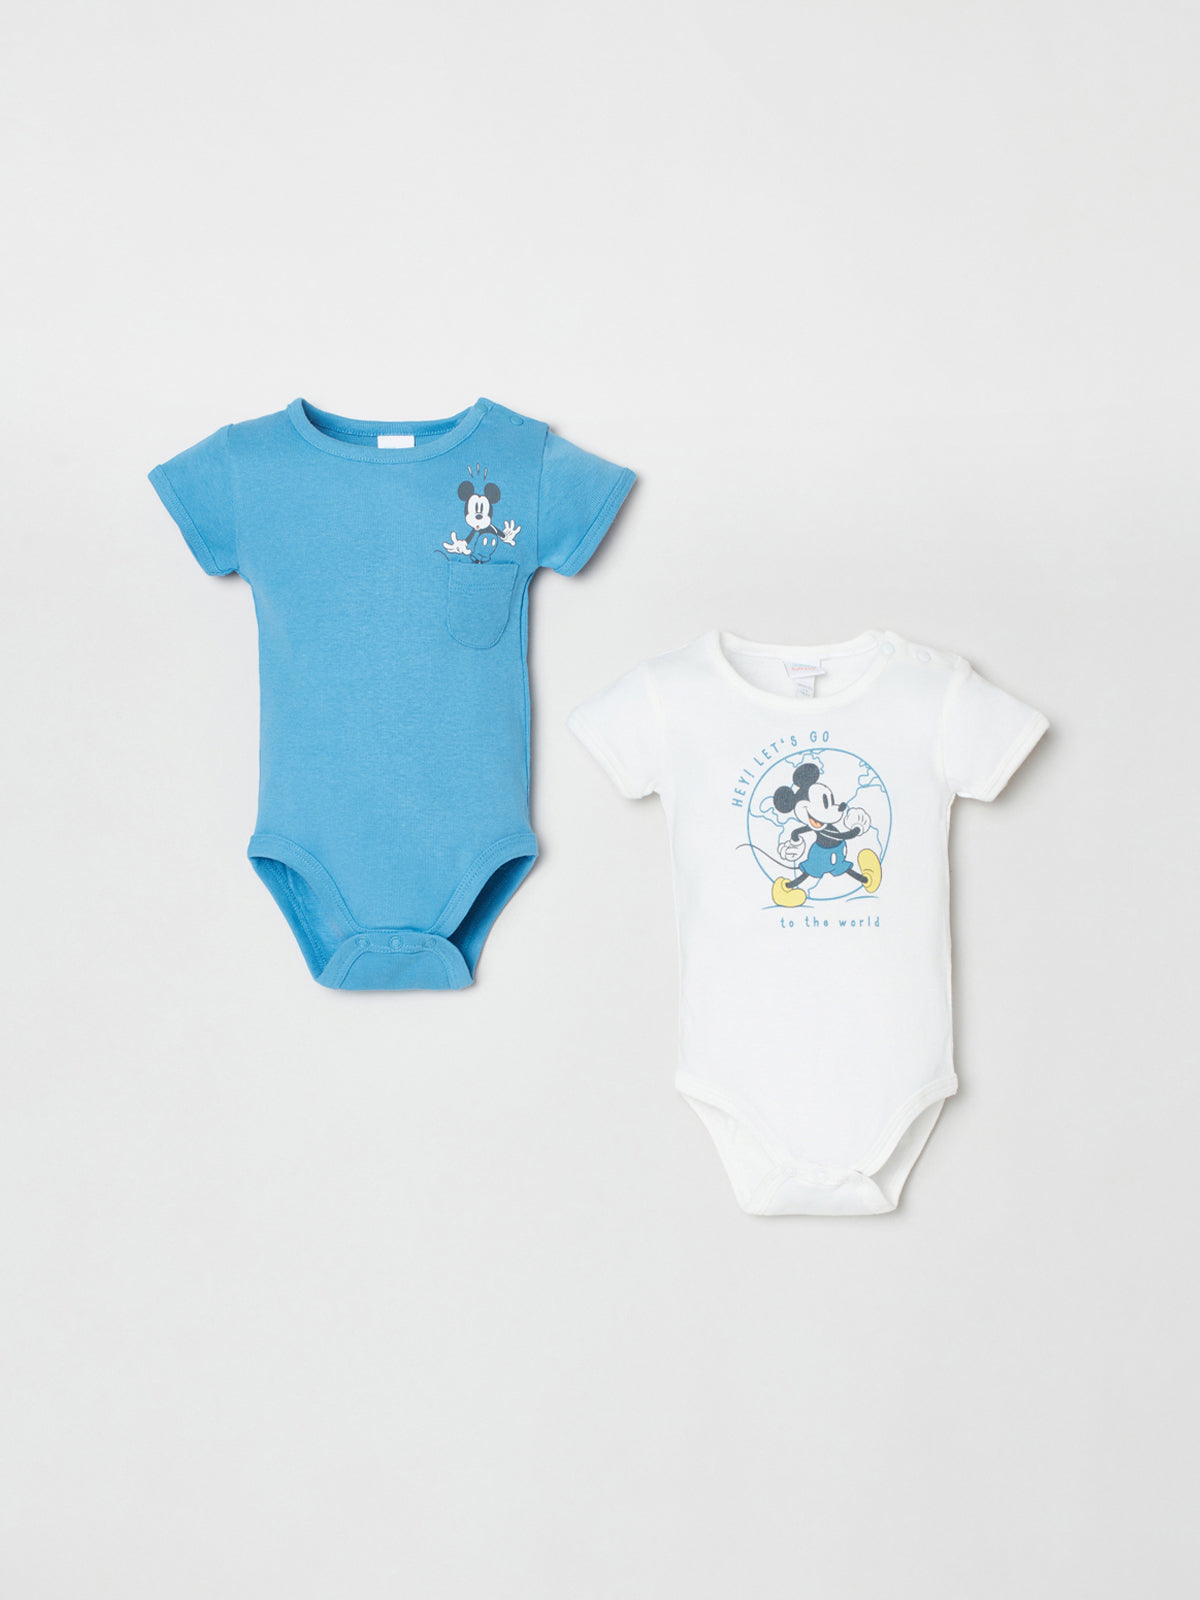 מארז בגדי גוף בהדפס מיקי מאוס / תינוקות יוניסקס